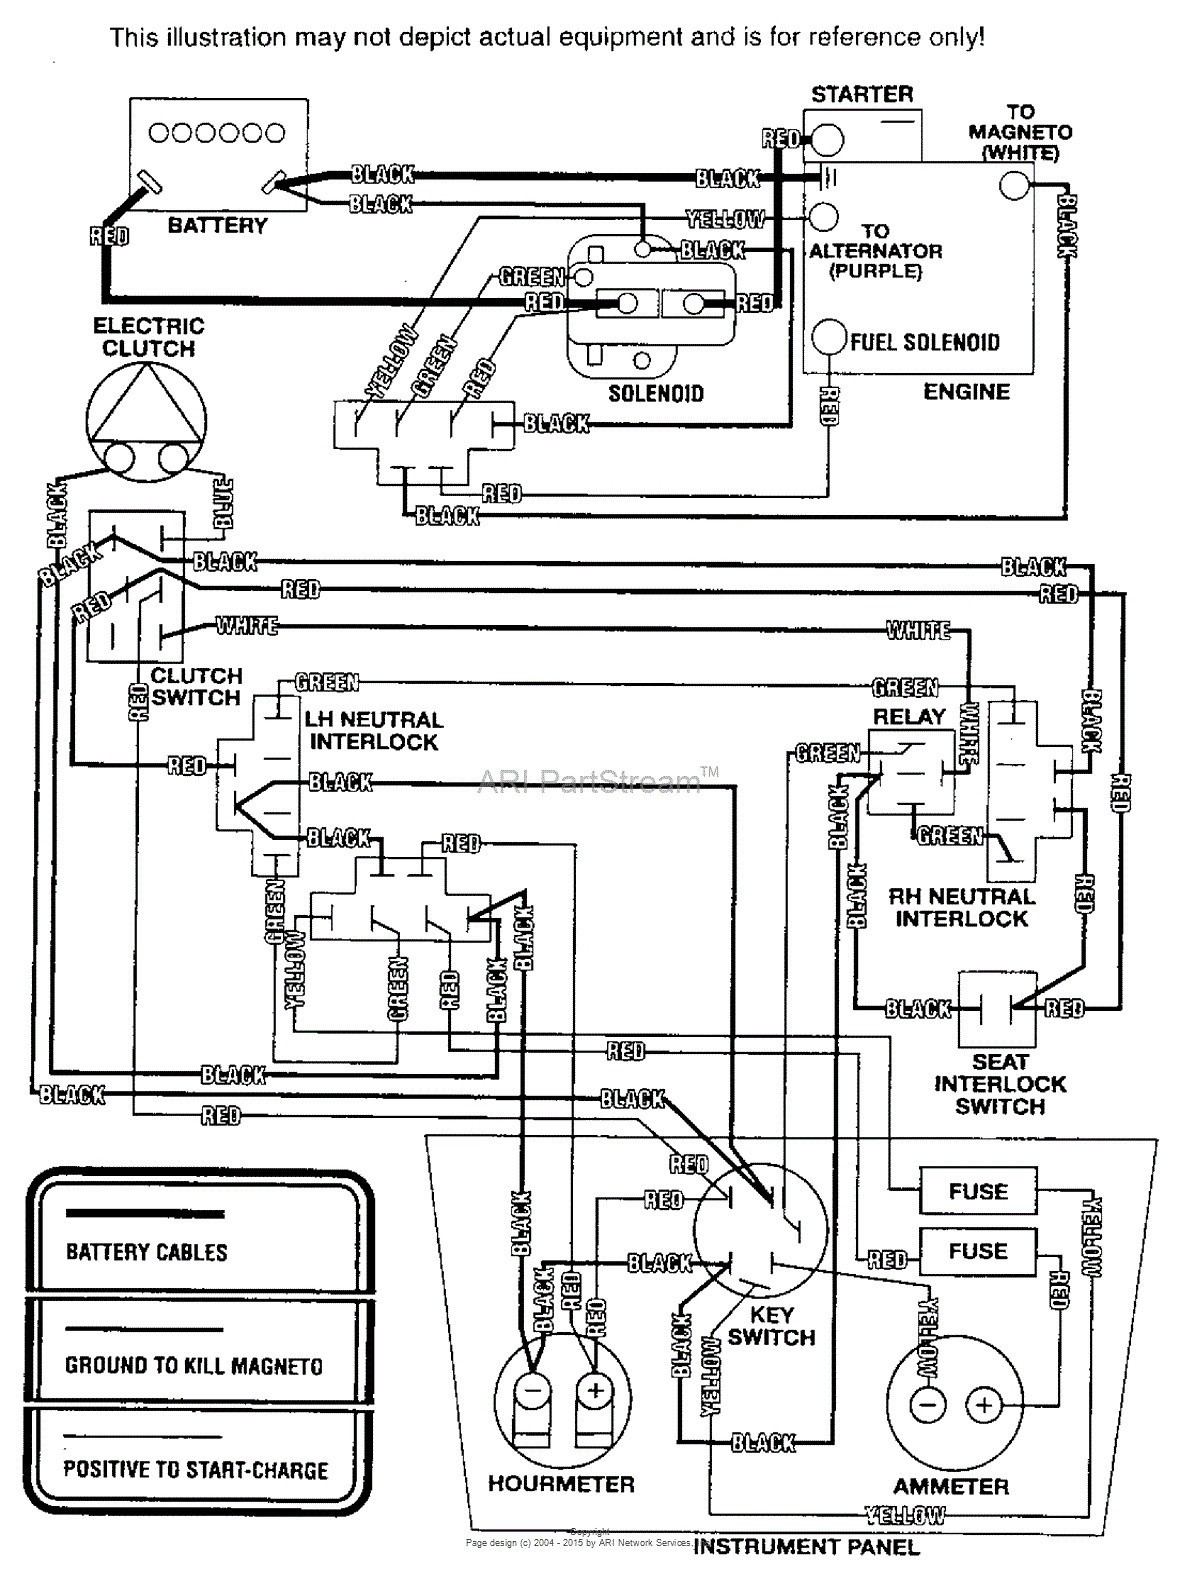 Briggs and Stratton Small Engine Diagram Wiring Diagrams Ripping Briggs and Stratton V Twin Wiring